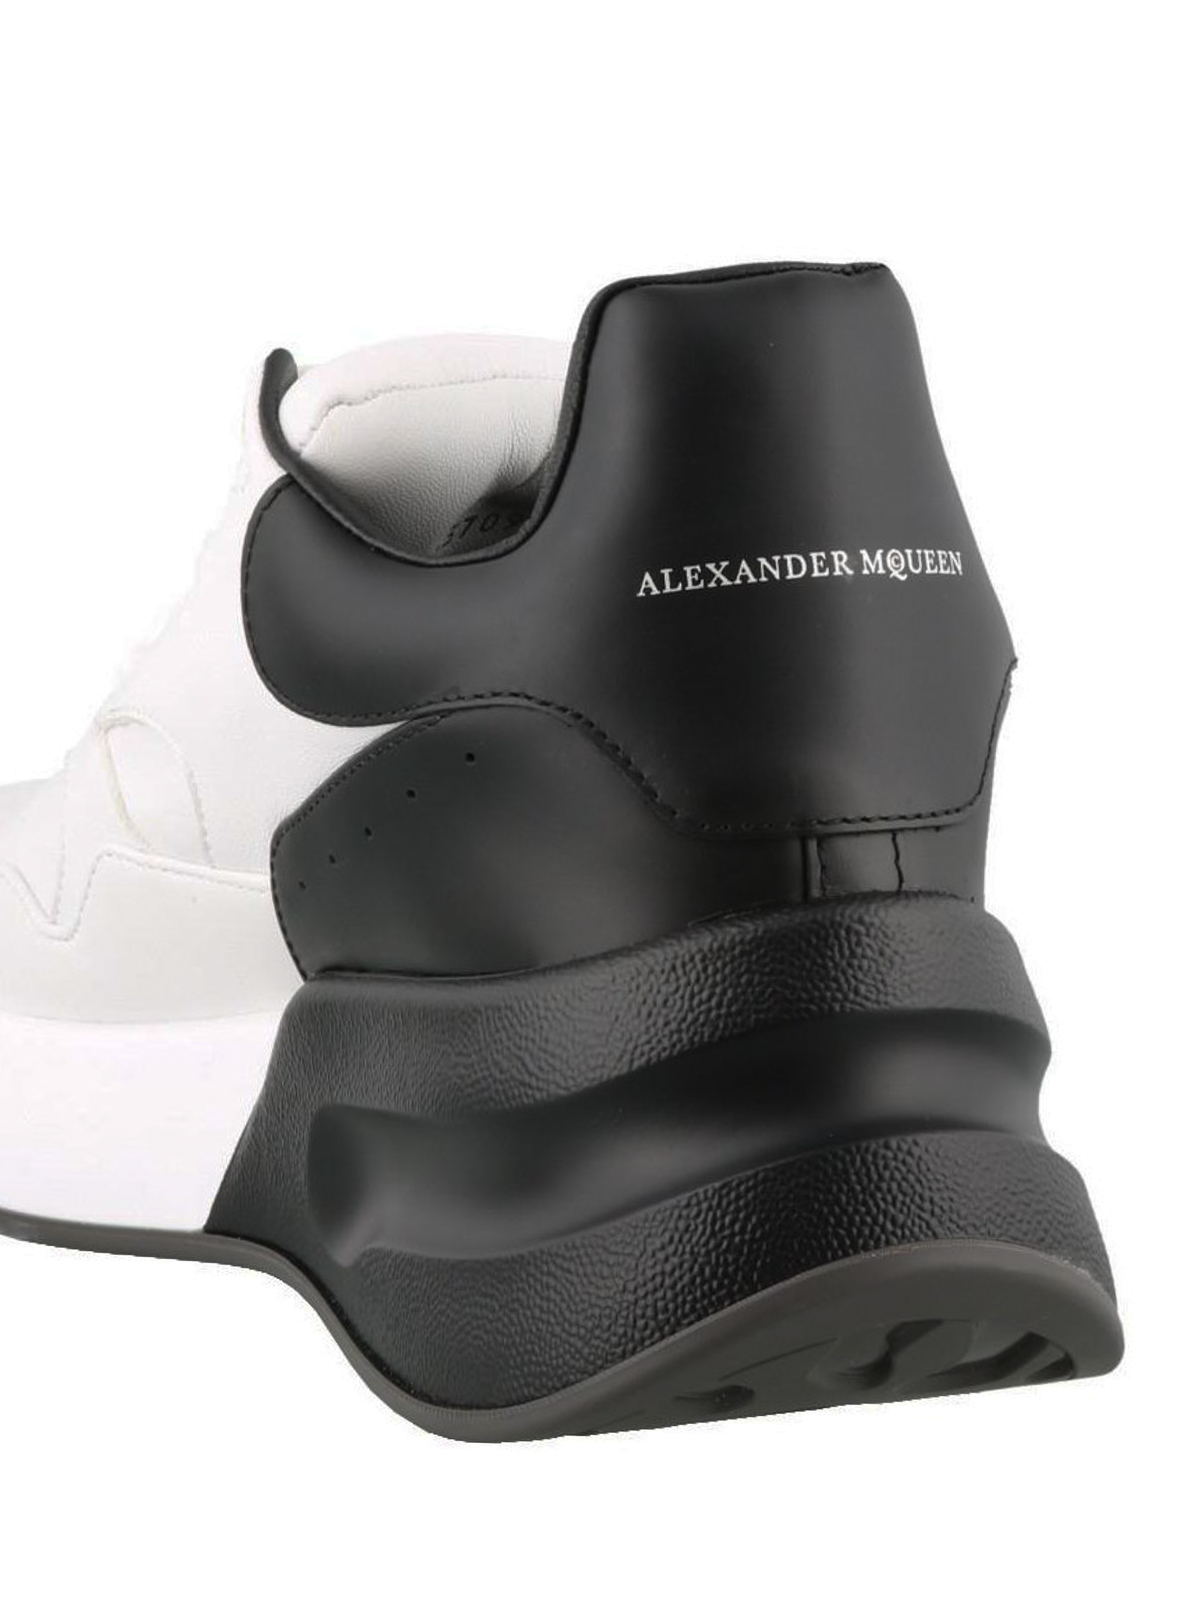 alexander mcqueen runner sneakers